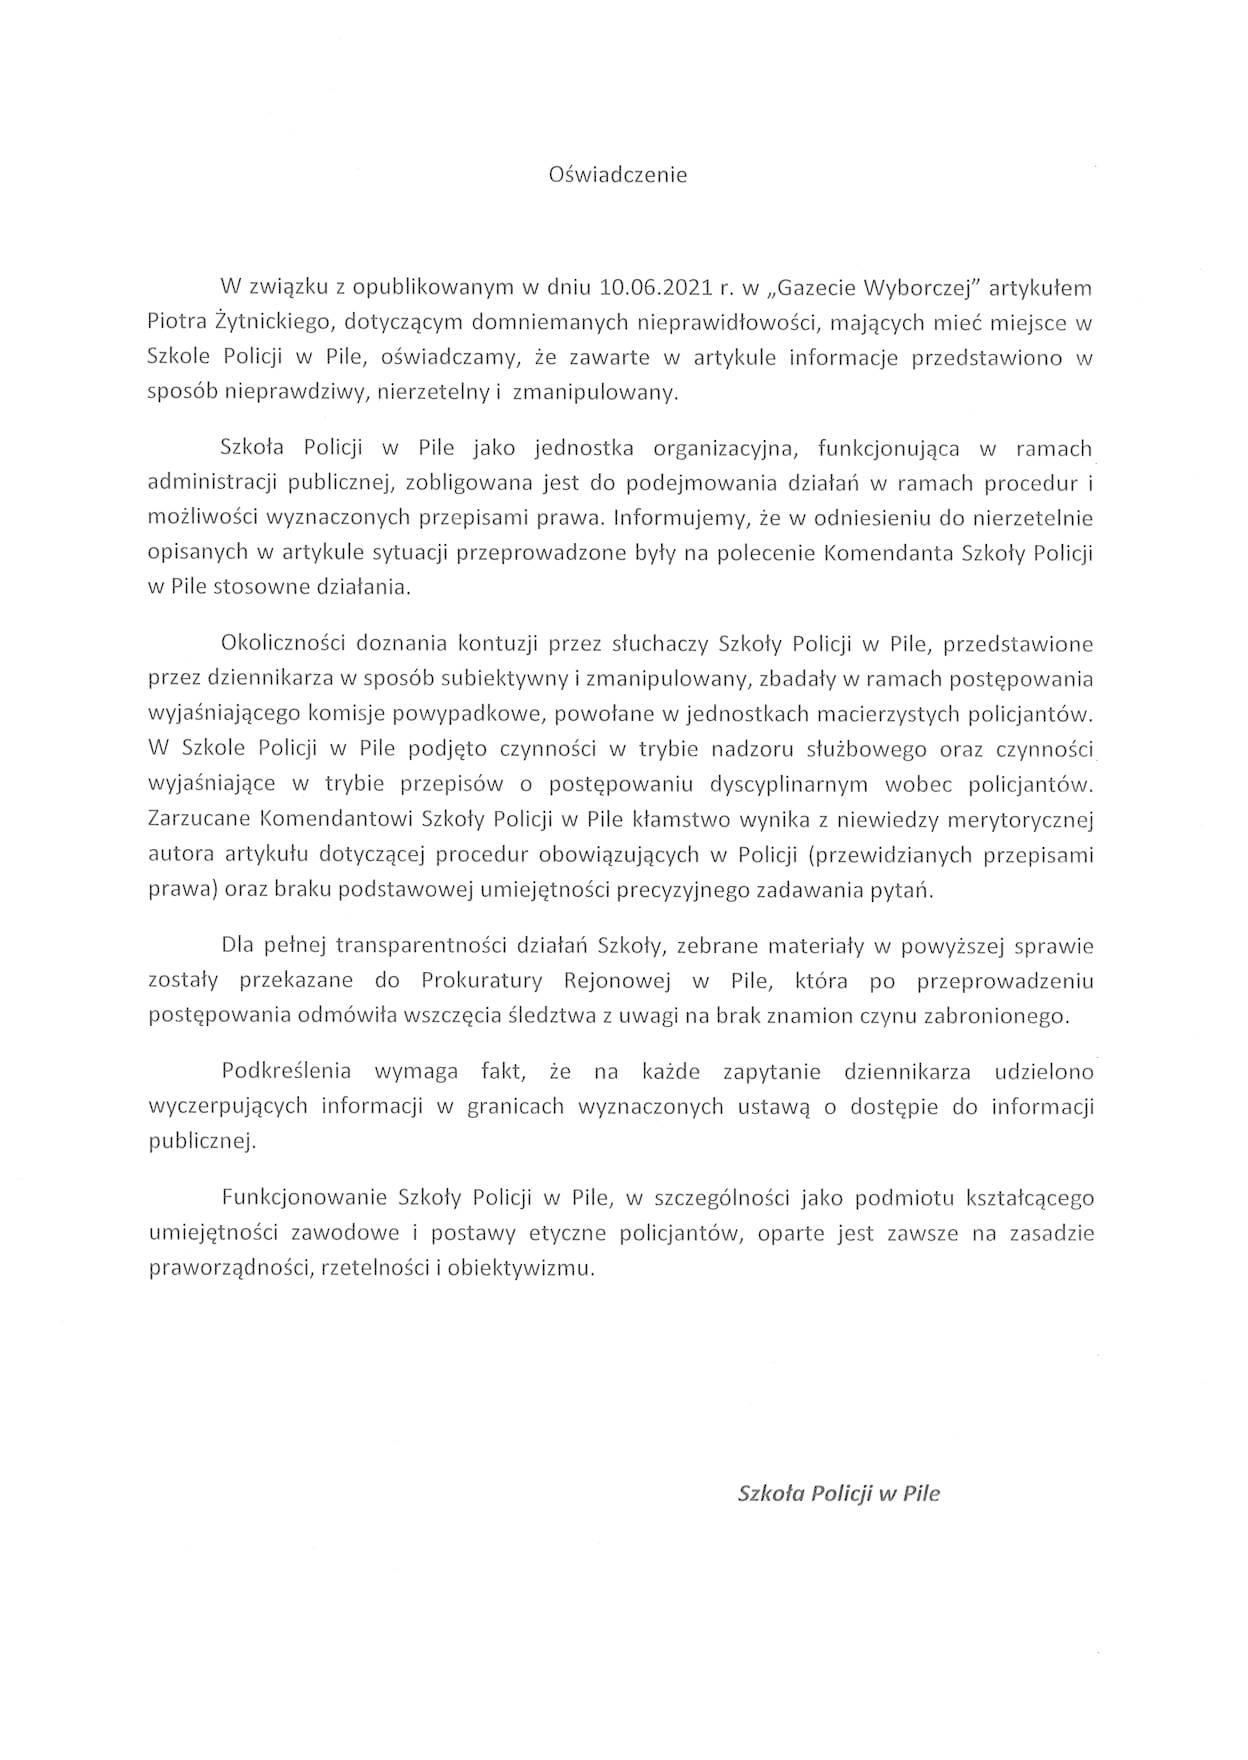 Oficjalne oświadczenie Szkoły Policji w Pile